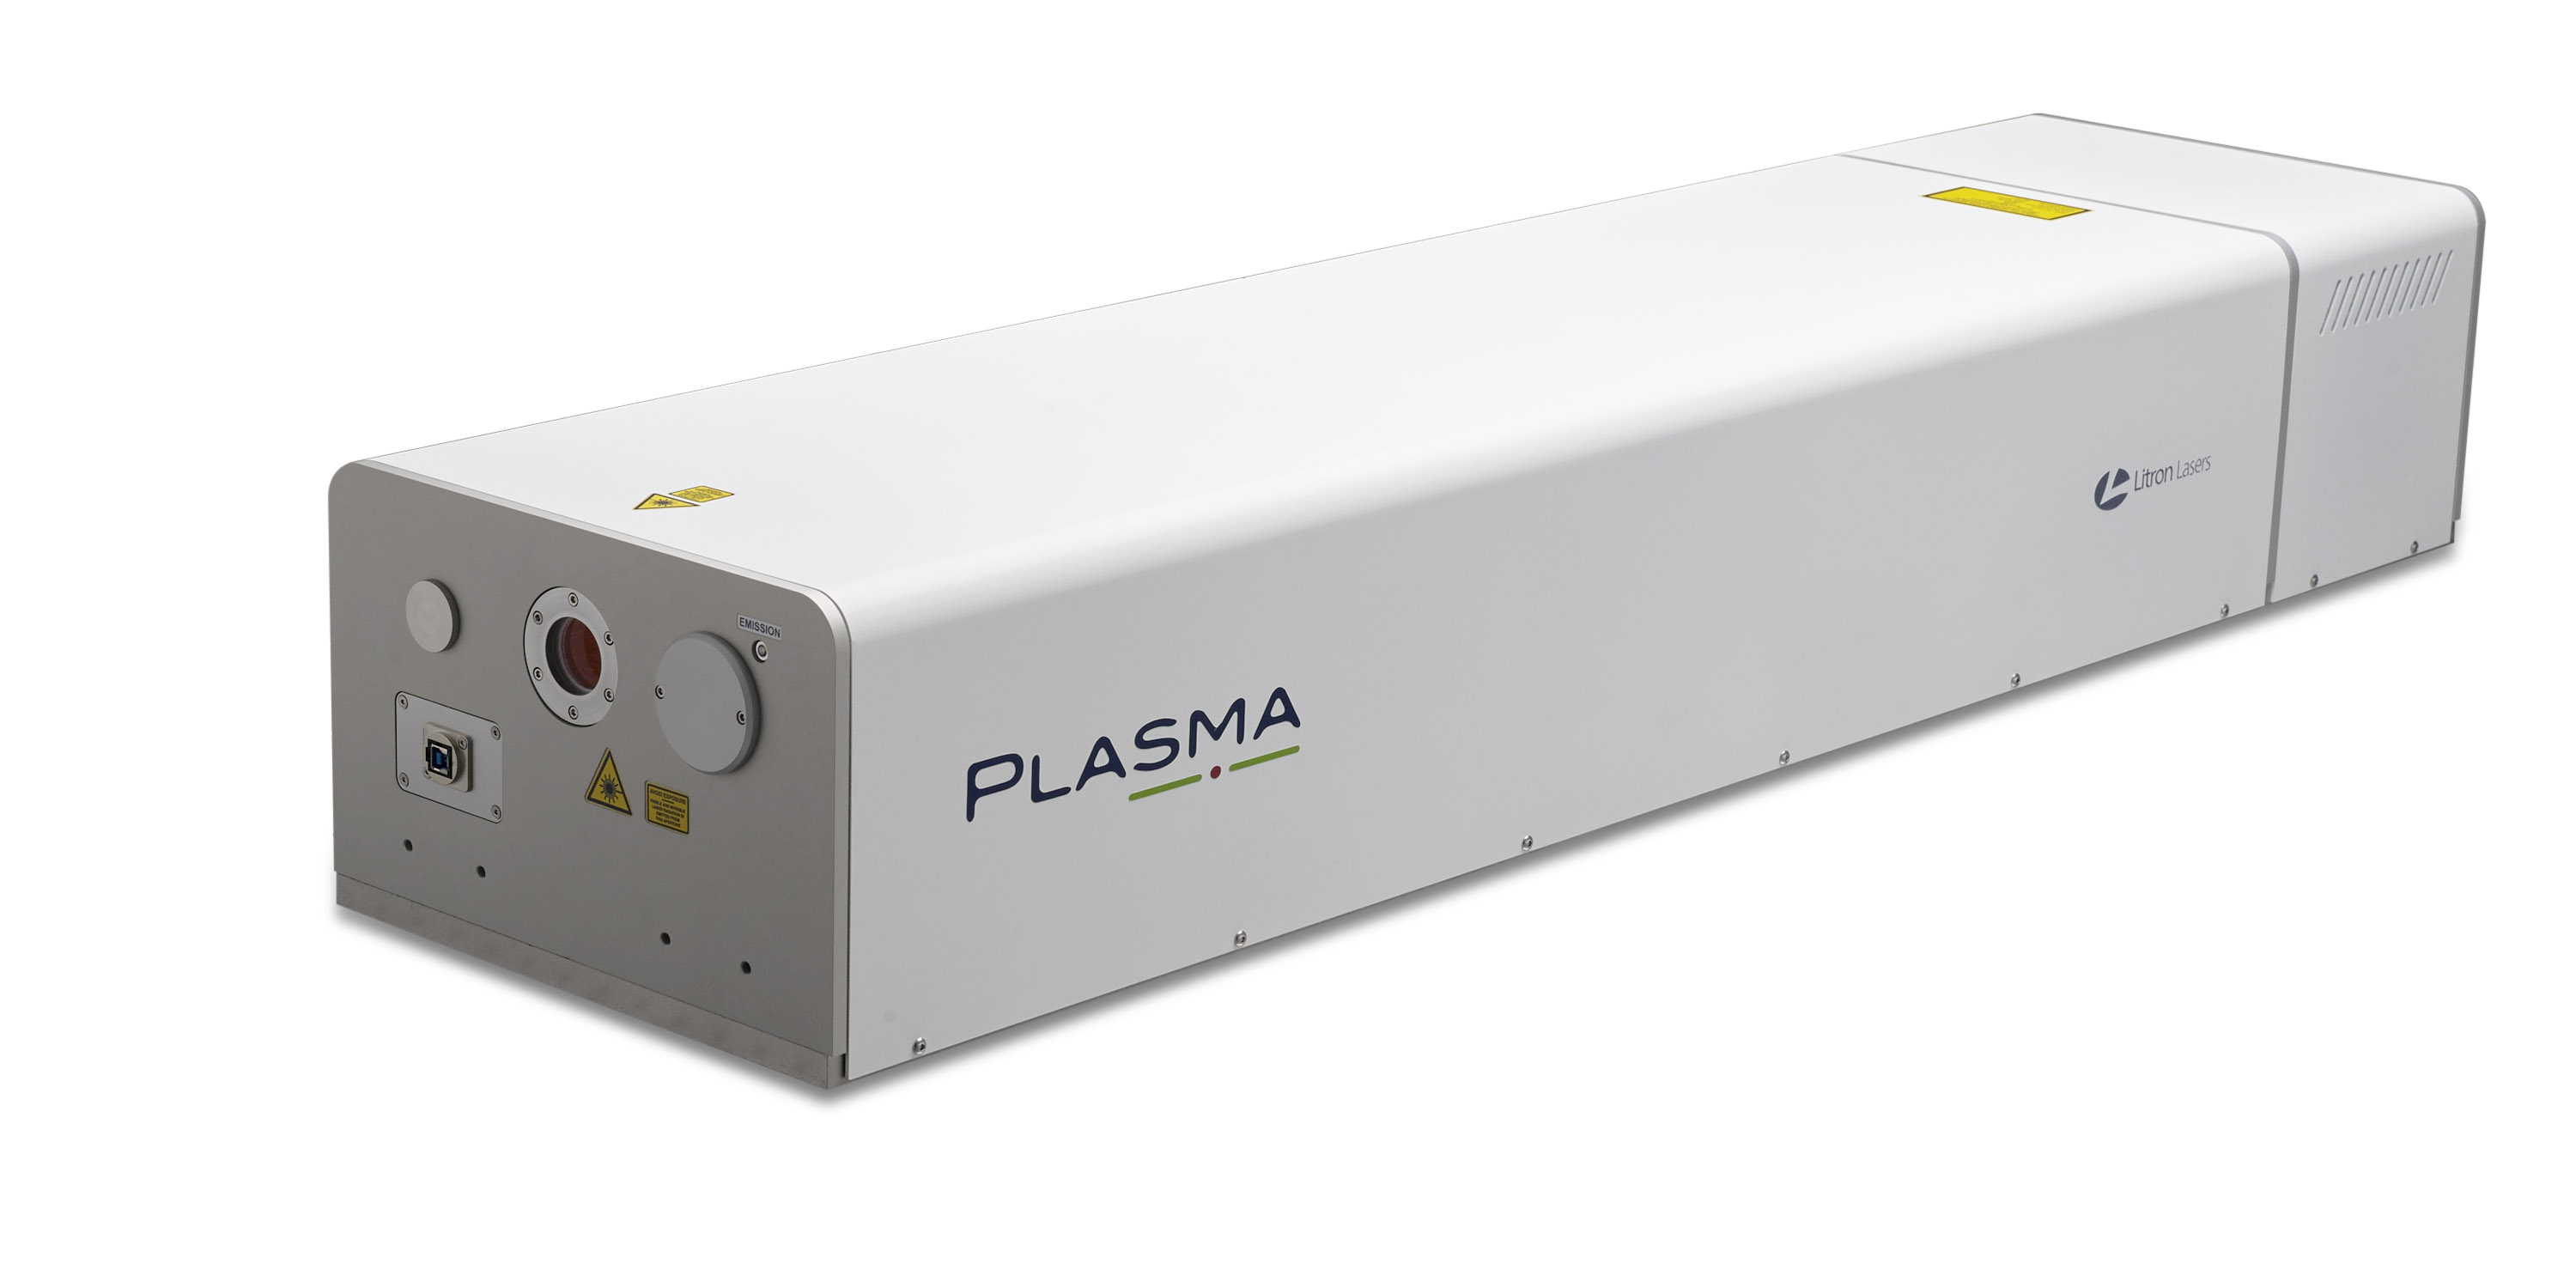 <1J Plasma高能量二极管泵浦纳秒激光器